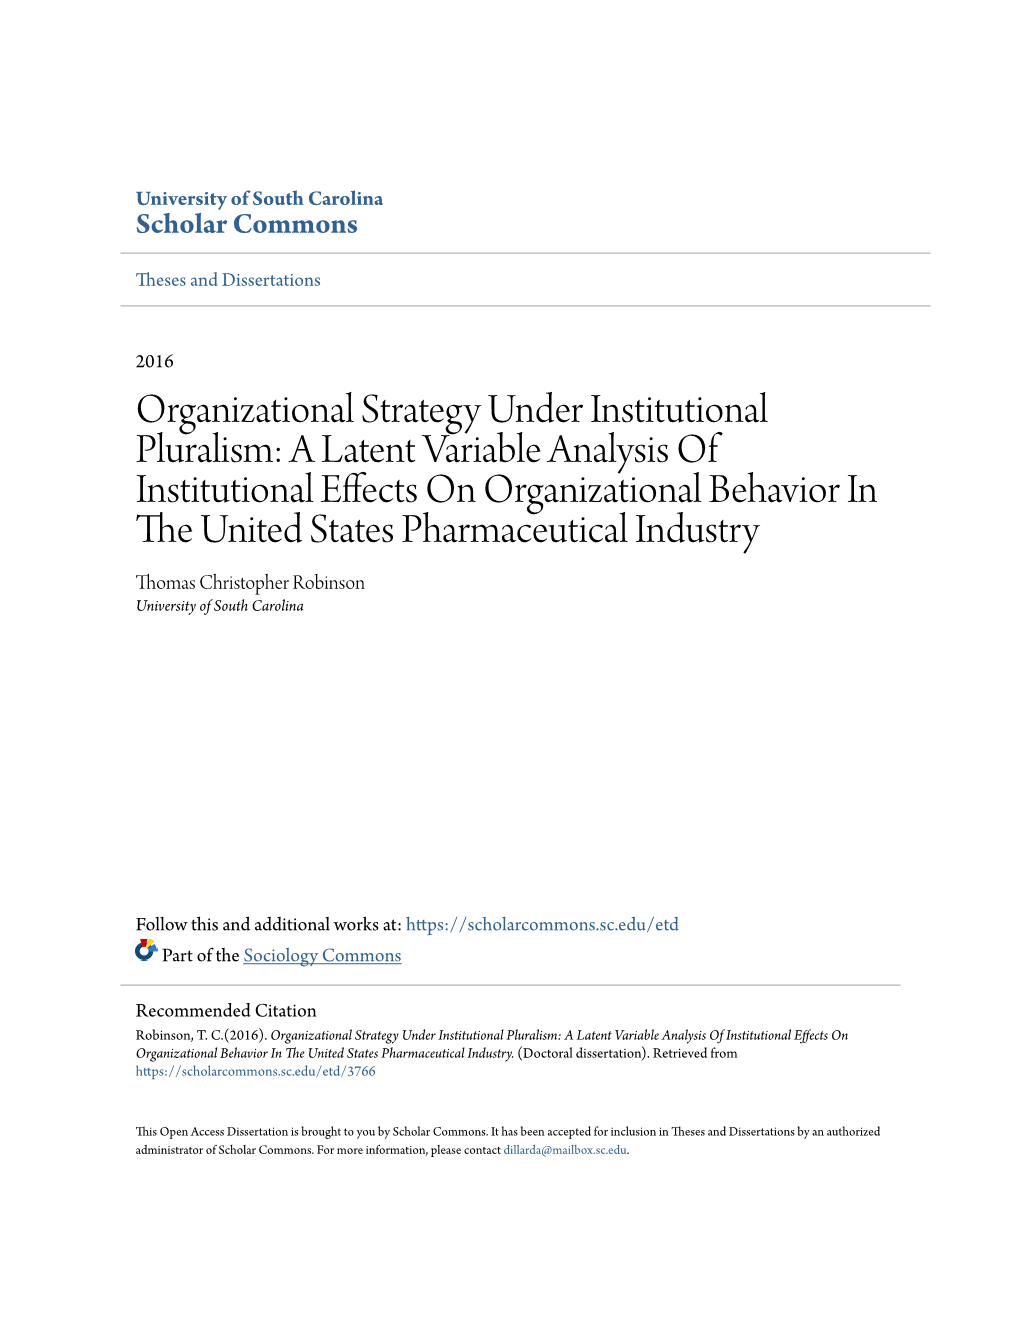 Organizational Strategy Under Institutional Pluralism